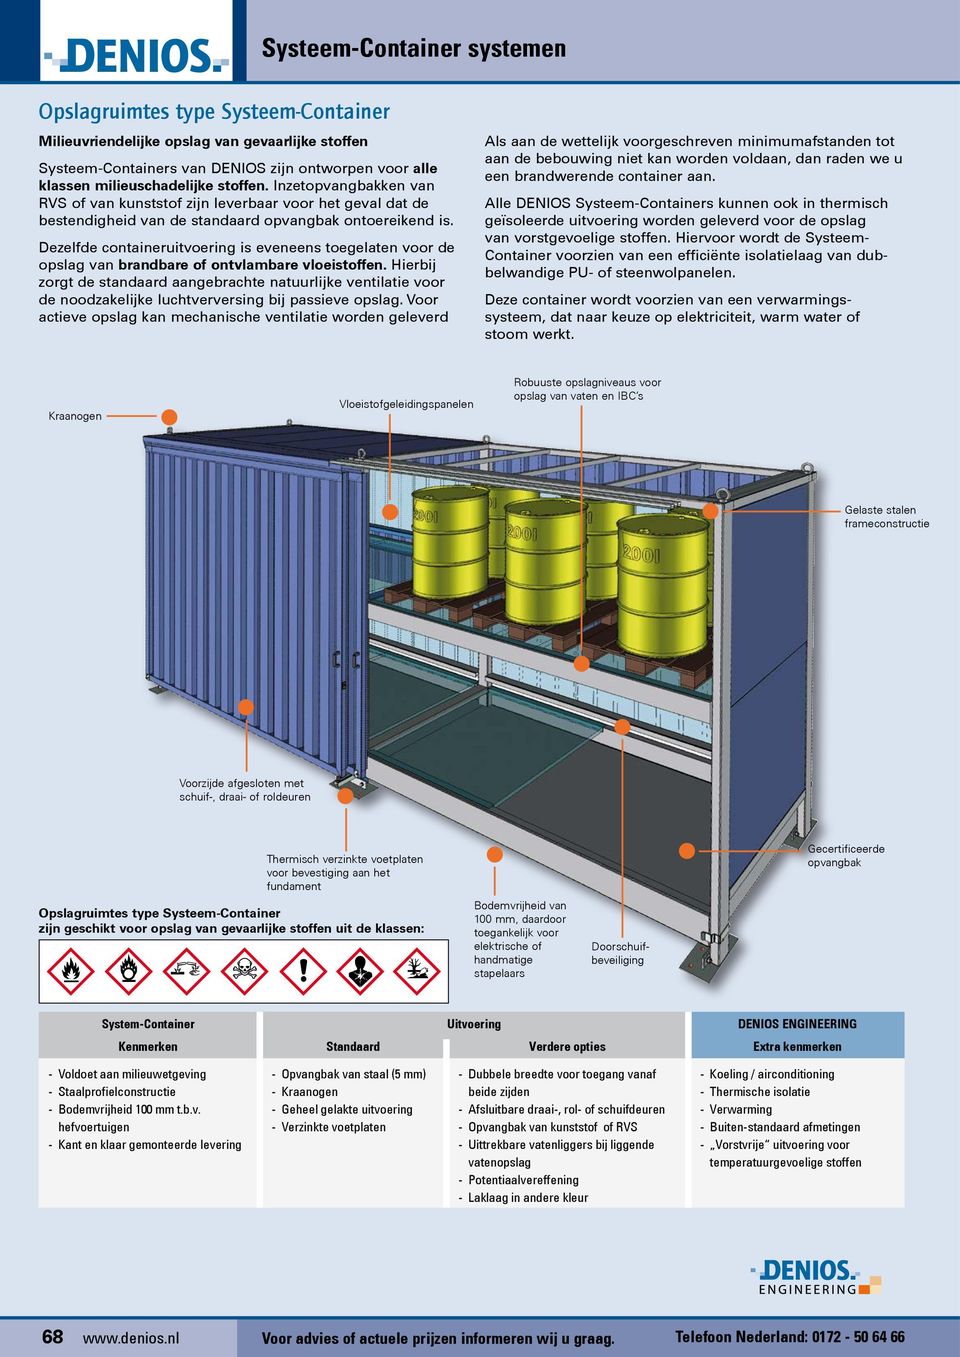 Dezelfde containeruitvoering is eveneens toegelaten voor de opslag van brandbare of ontvlambare vloeistoffen.